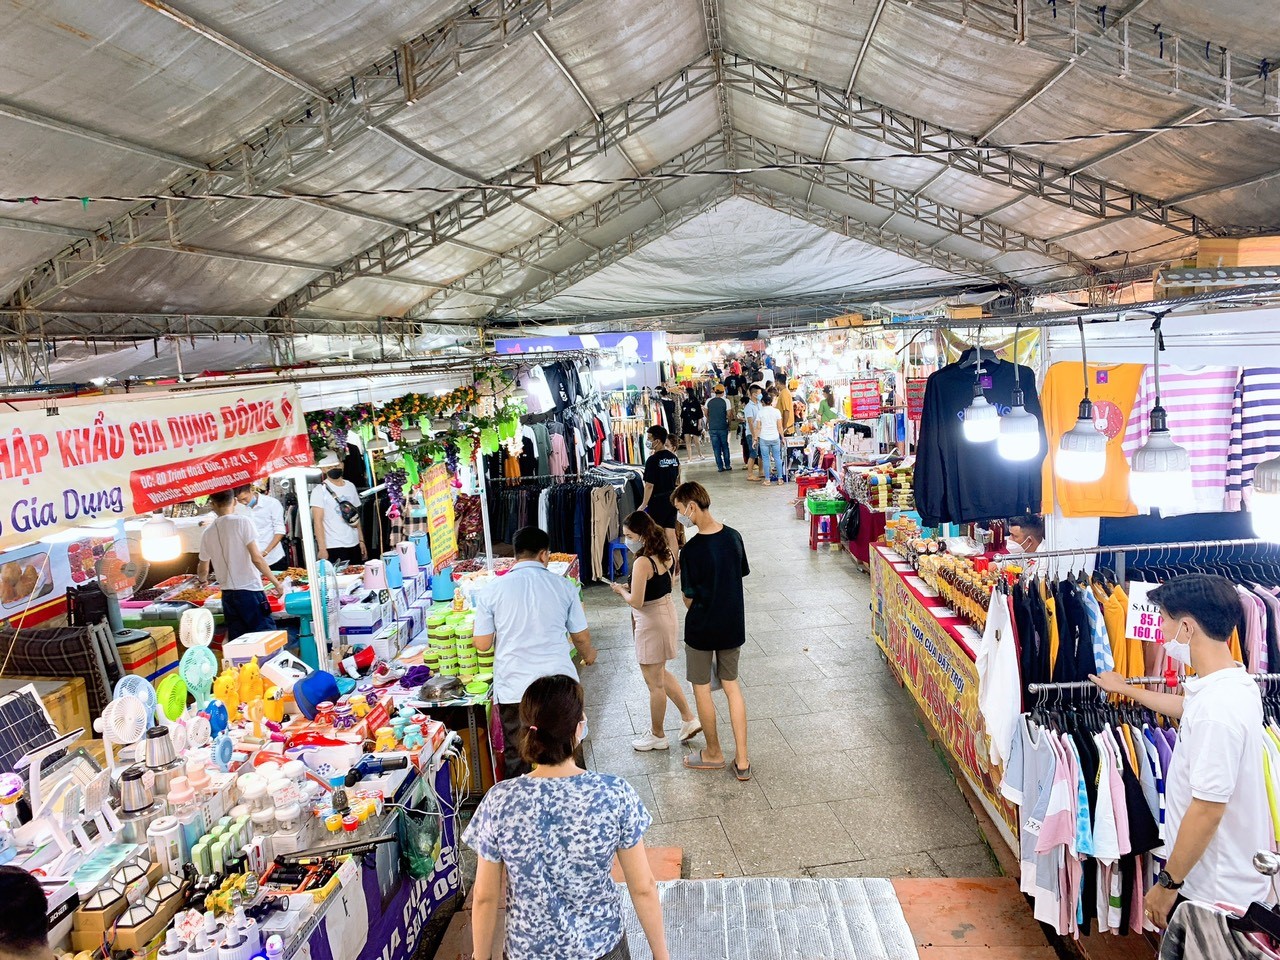 Hội chợ mua sắm hàng Thái Lan Việt Nam vui chơi mùa đông tại tỉnh Đồng Tháp - ảnh 4